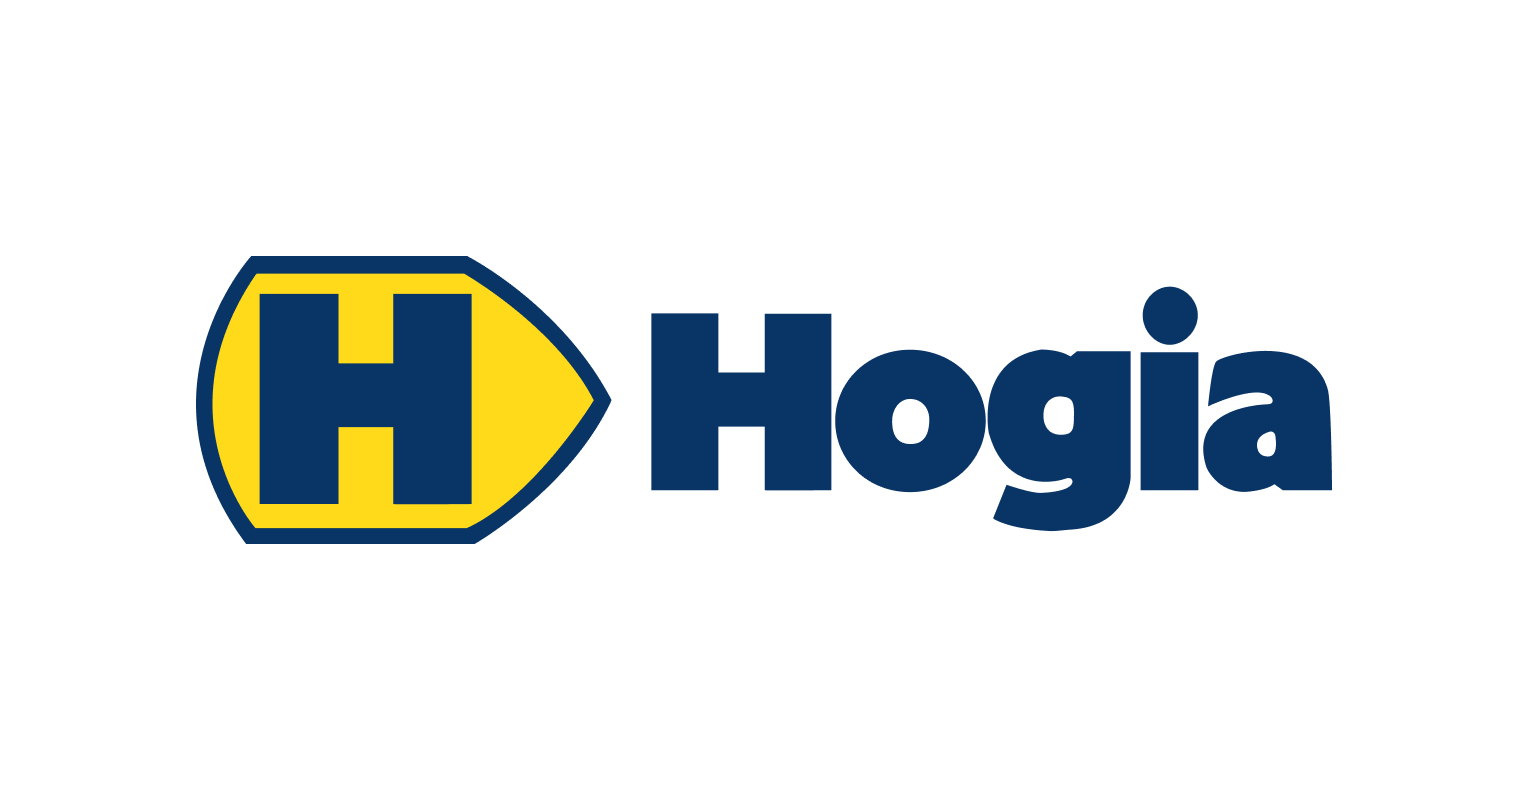 Hogia